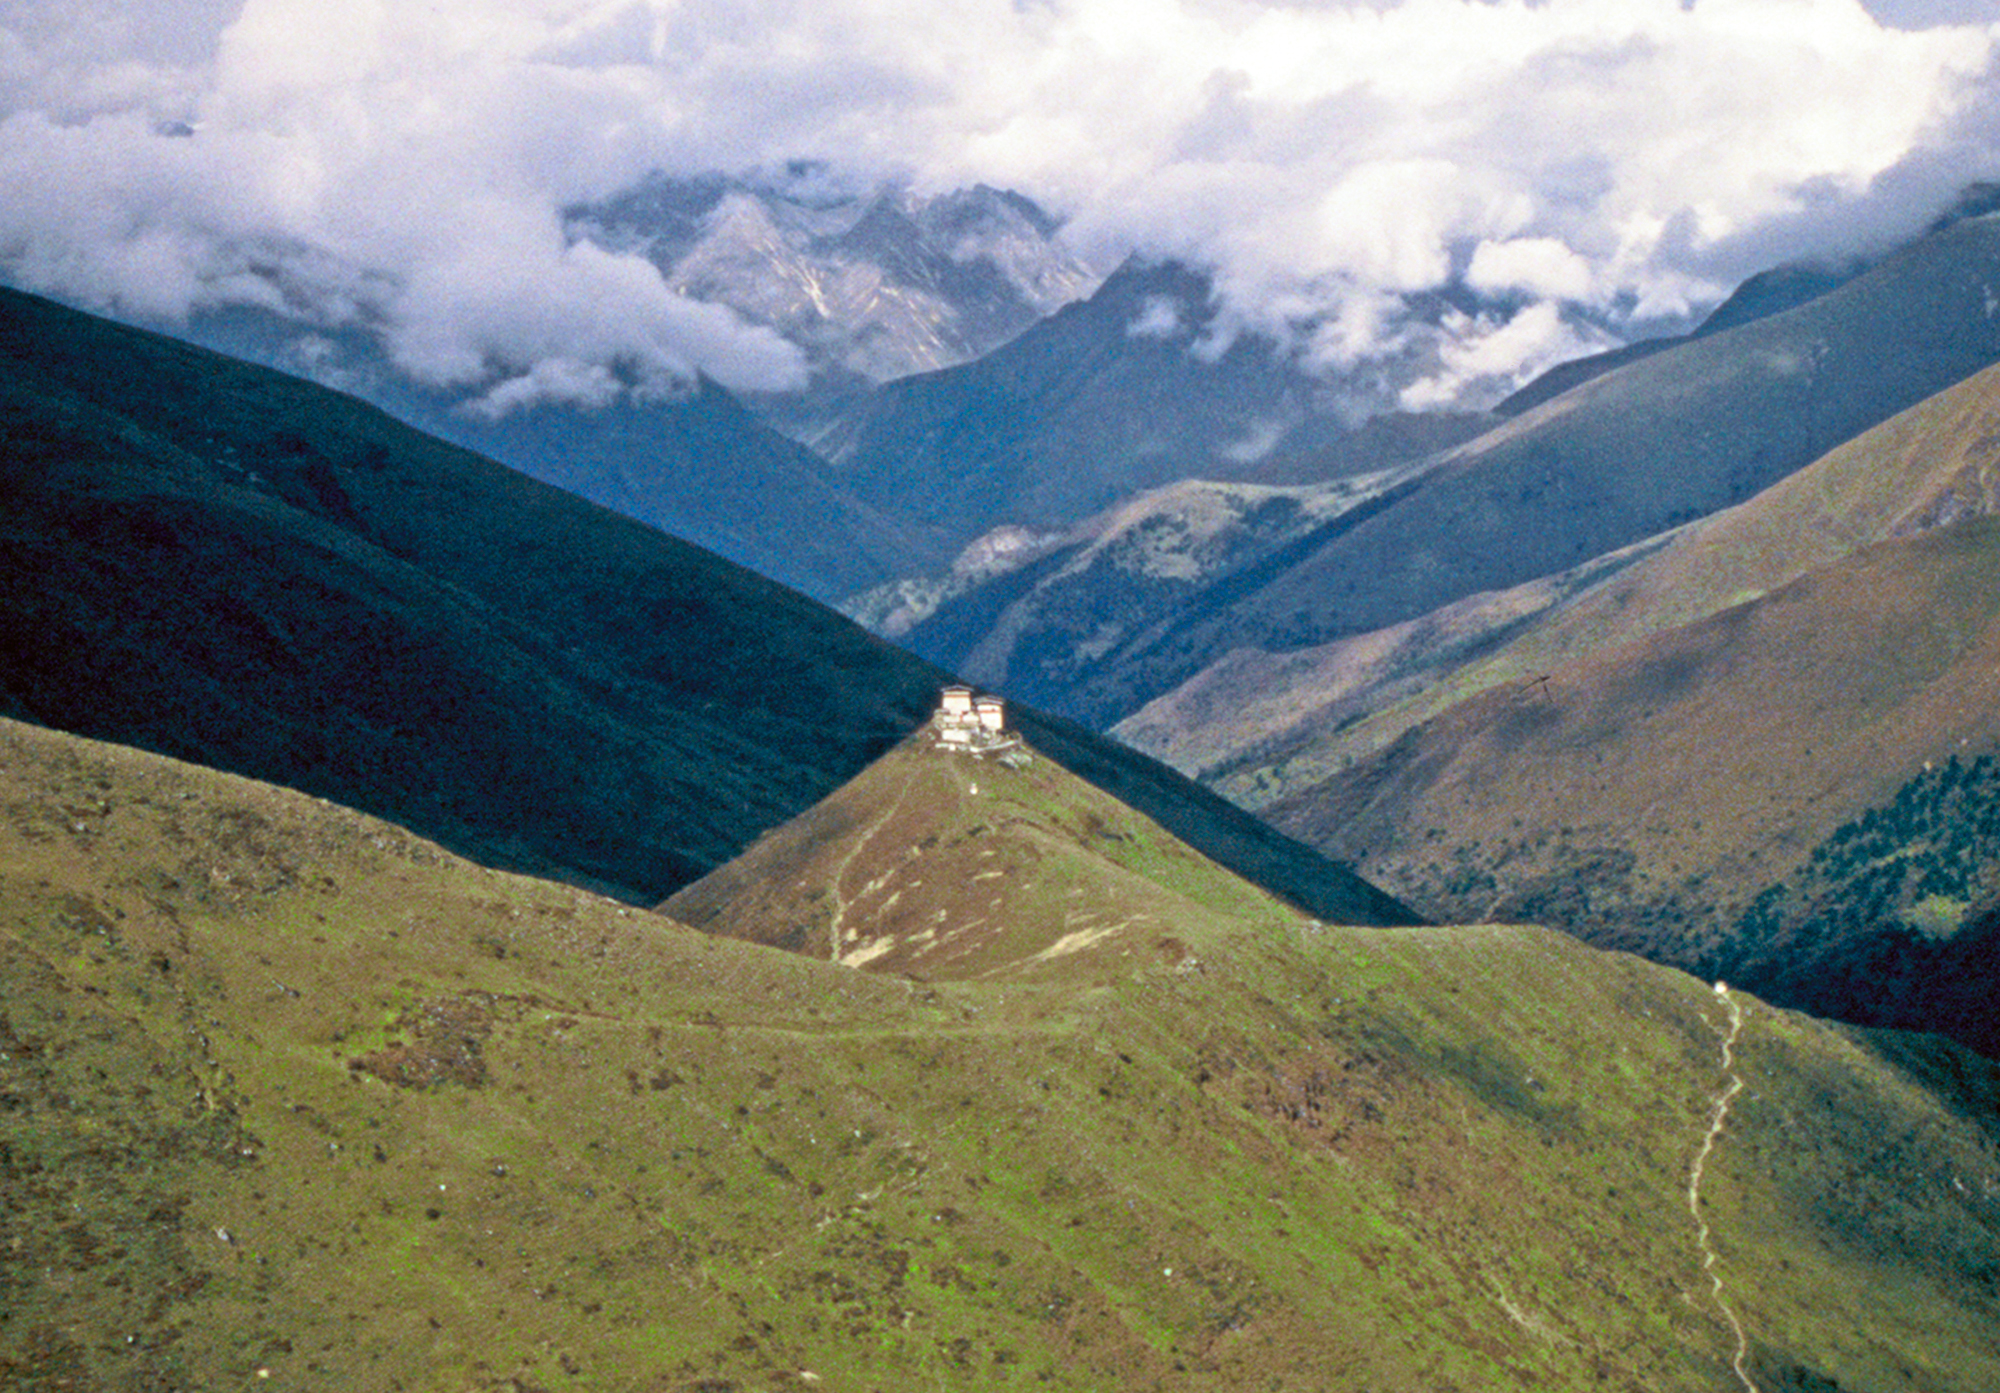  Mountain Fortress,&nbsp;Bhutan 